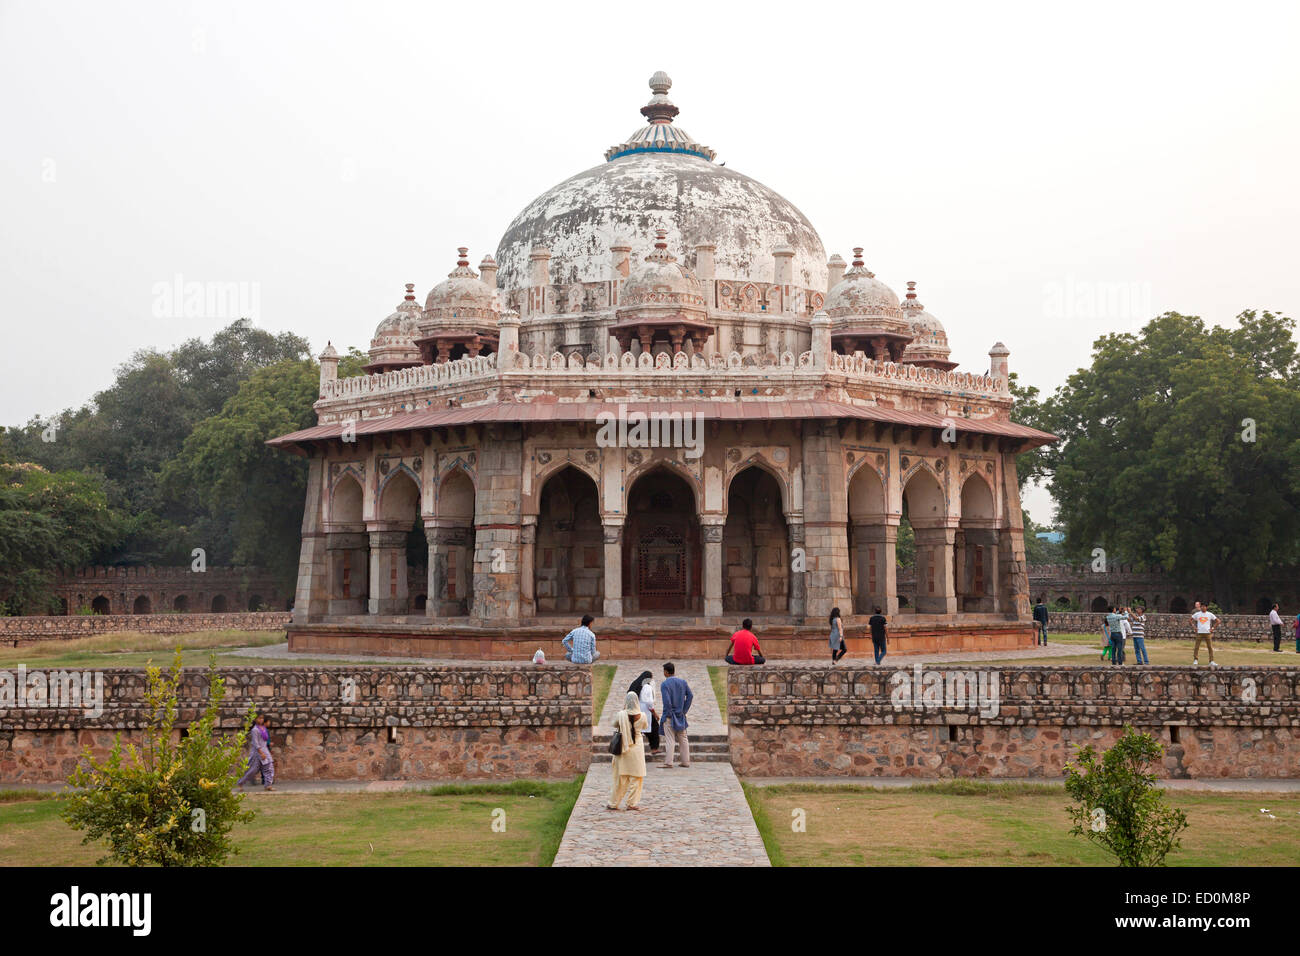 Tombe et la mosquée d'Isa Khan près de Tombe de Humayun, patrimoine mondial de l'UNESCO à New Delhi, Inde, Asie Banque D'Images